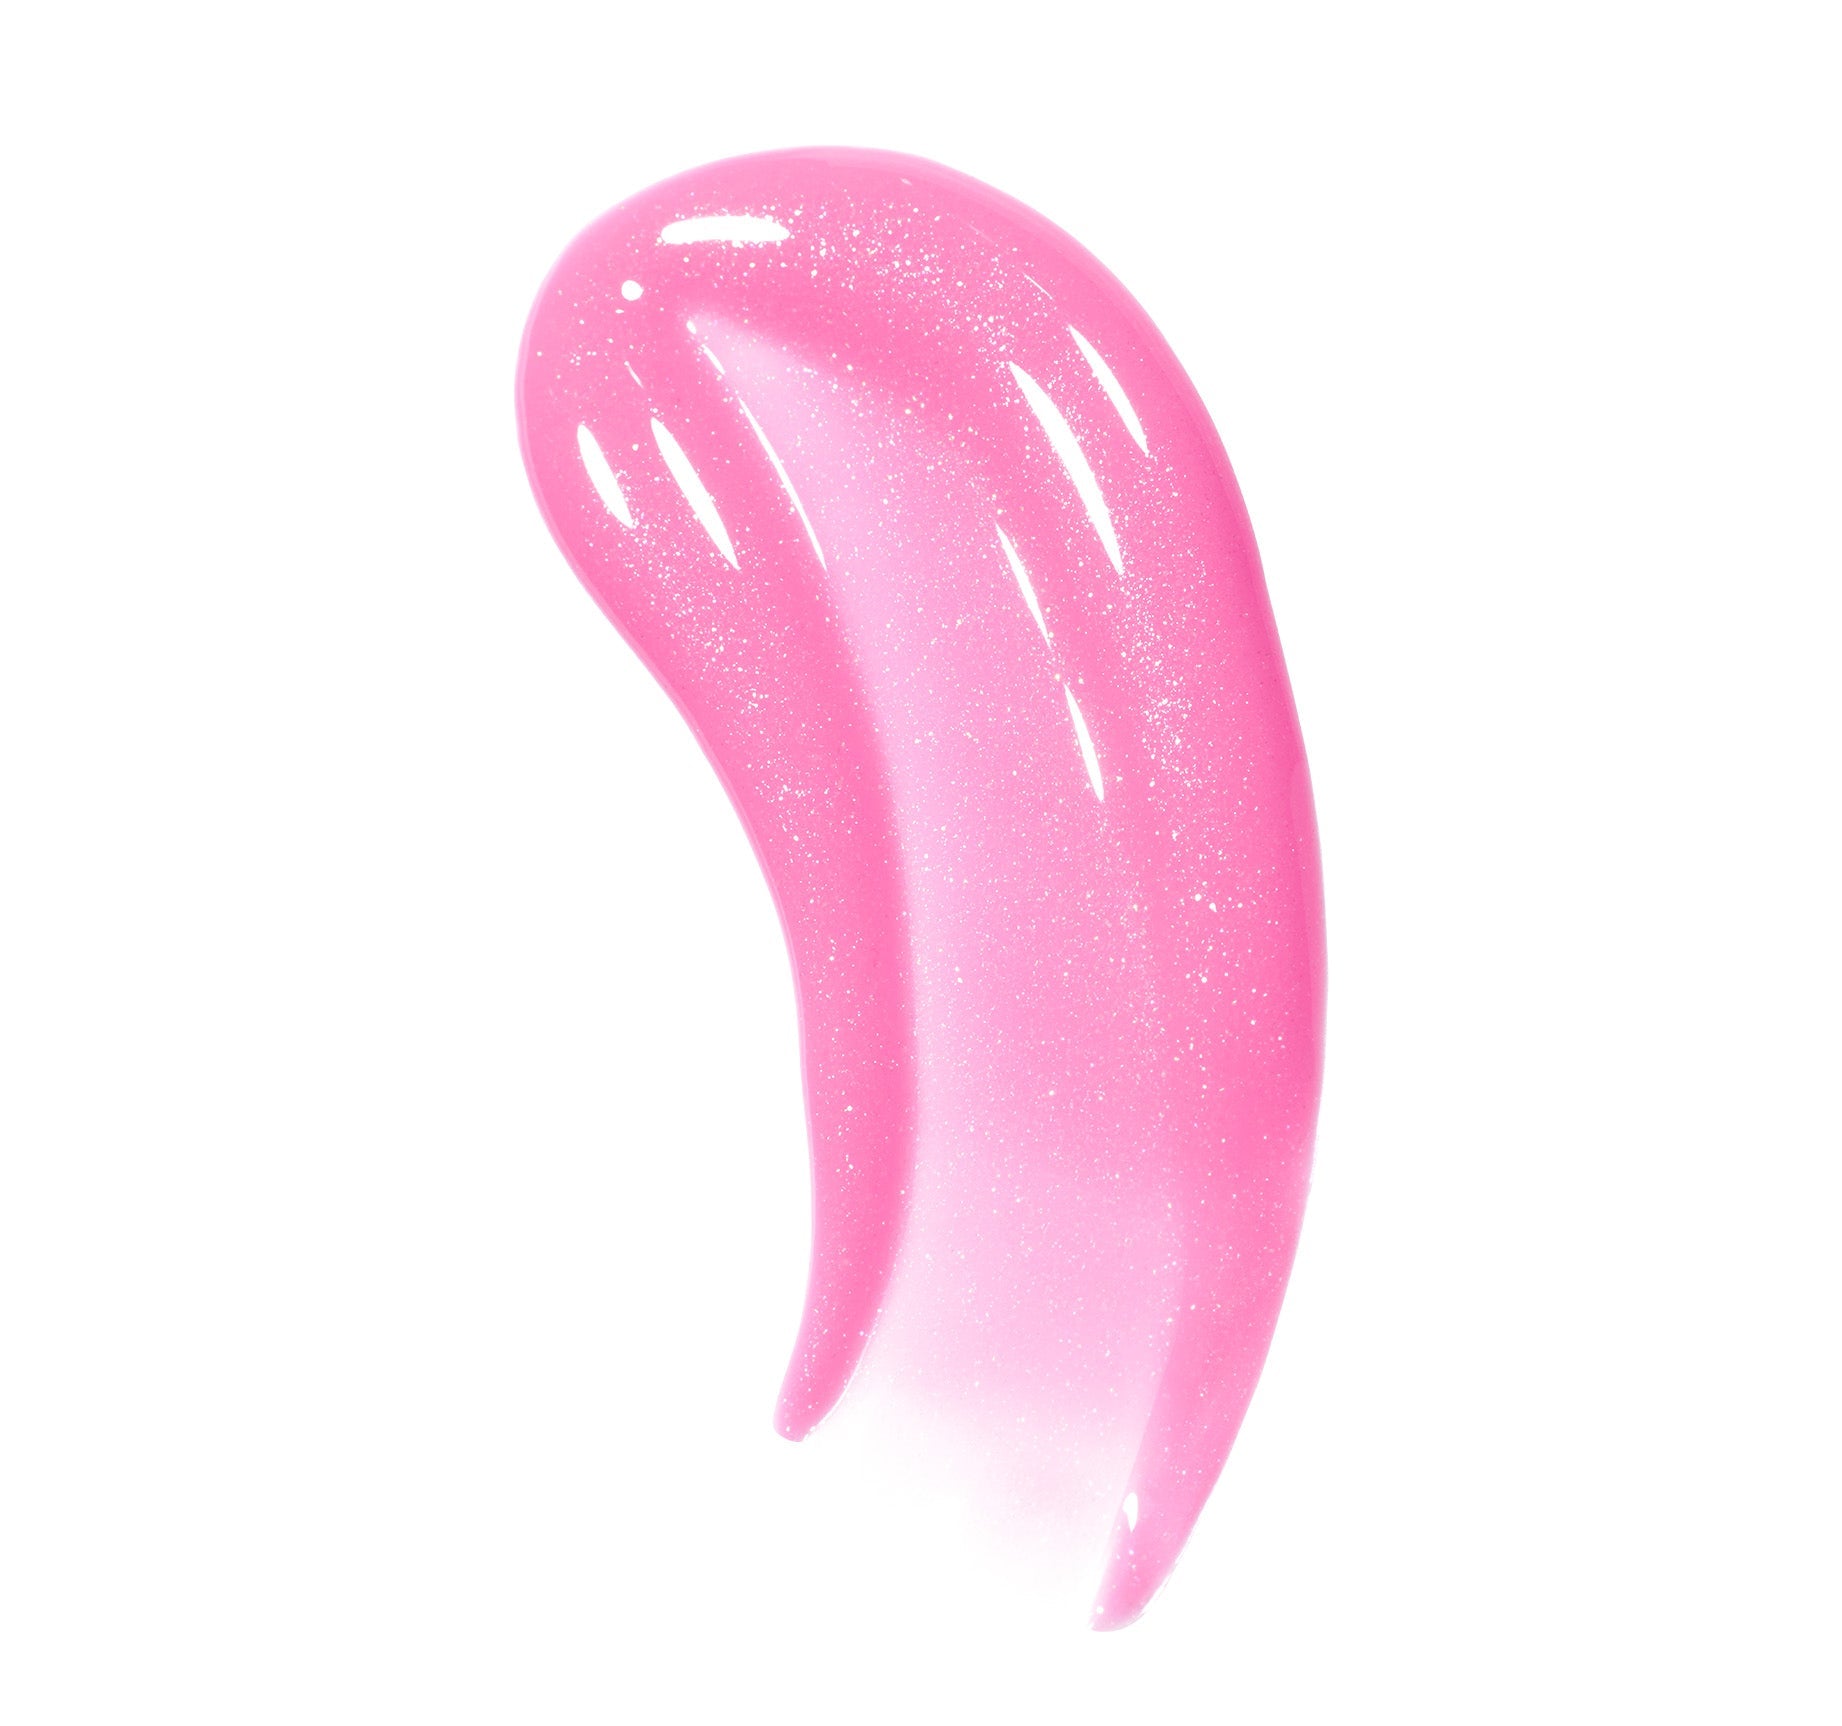 Dripglass Glazed High Shine Lip Gloss - Glint Of Pink - Image 2